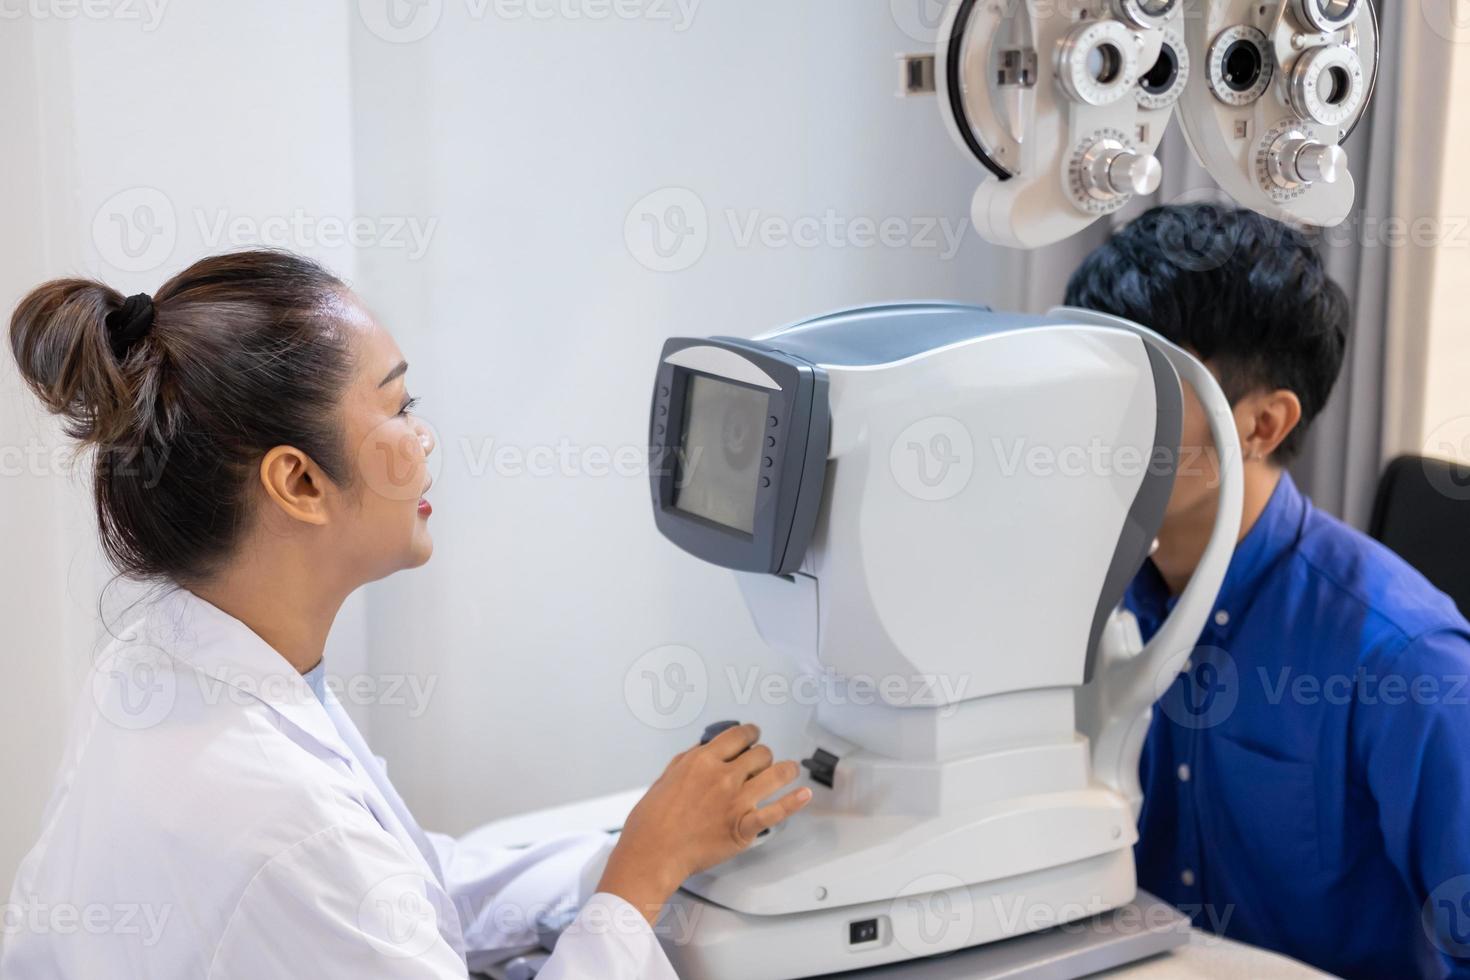 selektiver fokus auf dem bildschirm von optometriegeräten. während der Optometrist die subjektive Refraktion verwendet, um das Sehsystem des Auges älterer Patientinnen mit einer professionellen Maschine vor der Herstellung einer Brille zu untersuchen. foto